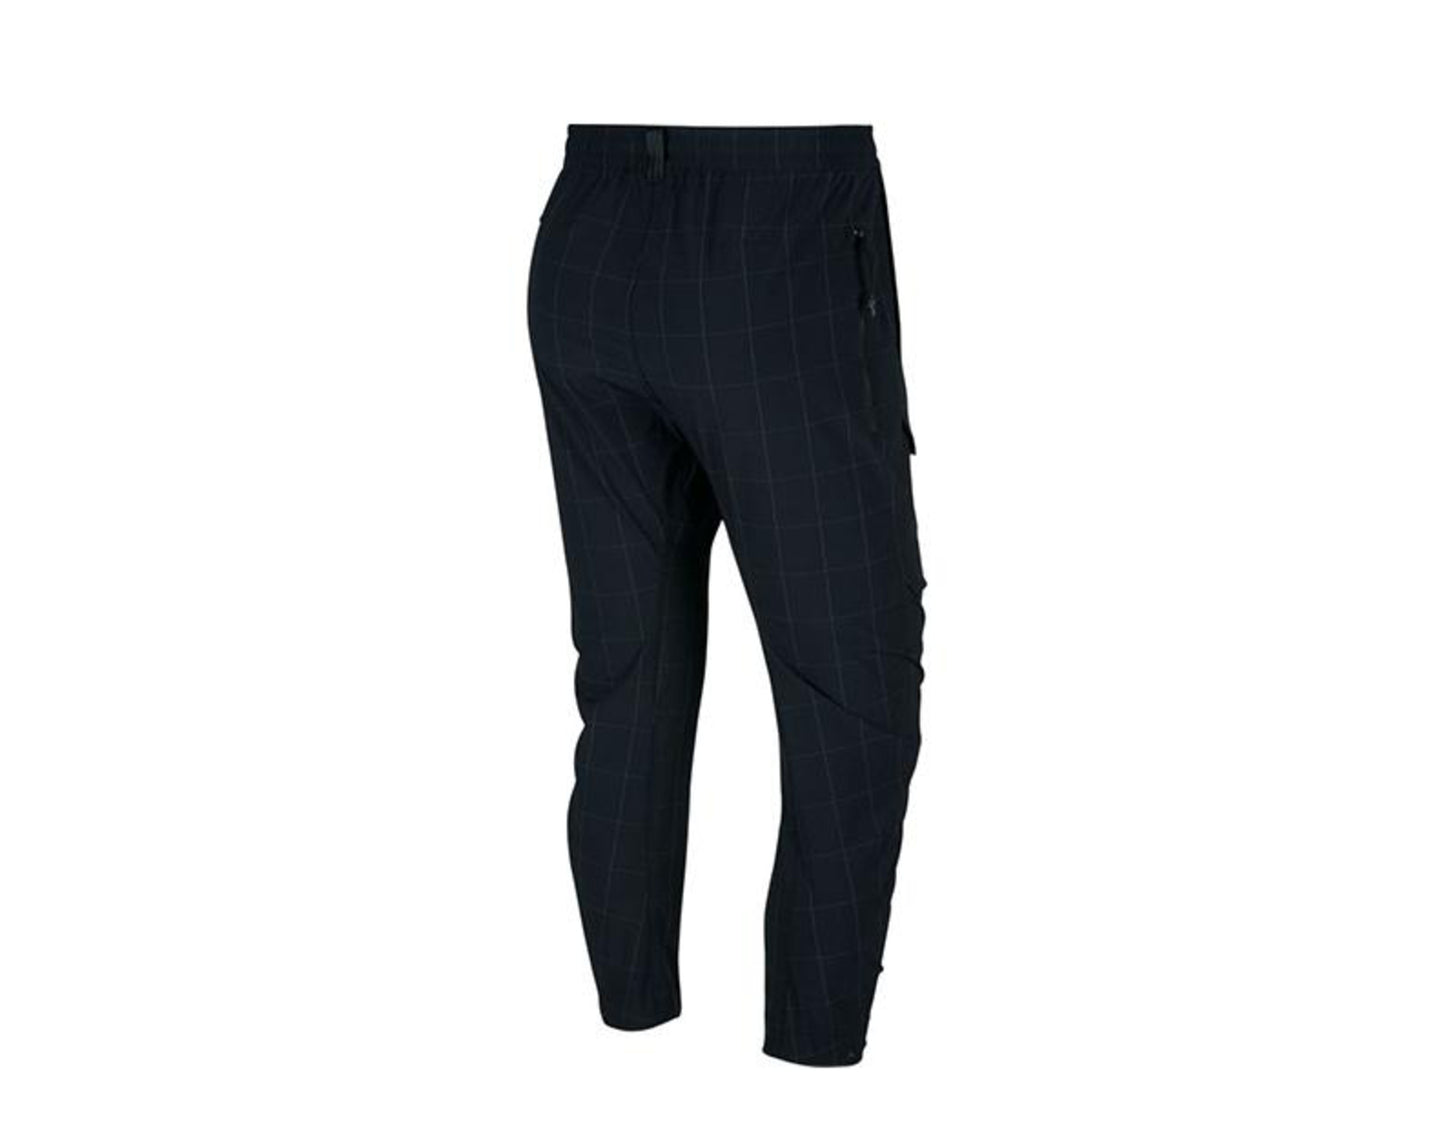 Nike Sportswear Tech Pack Woven Cargos Black/White Men's Pants BV4443-010